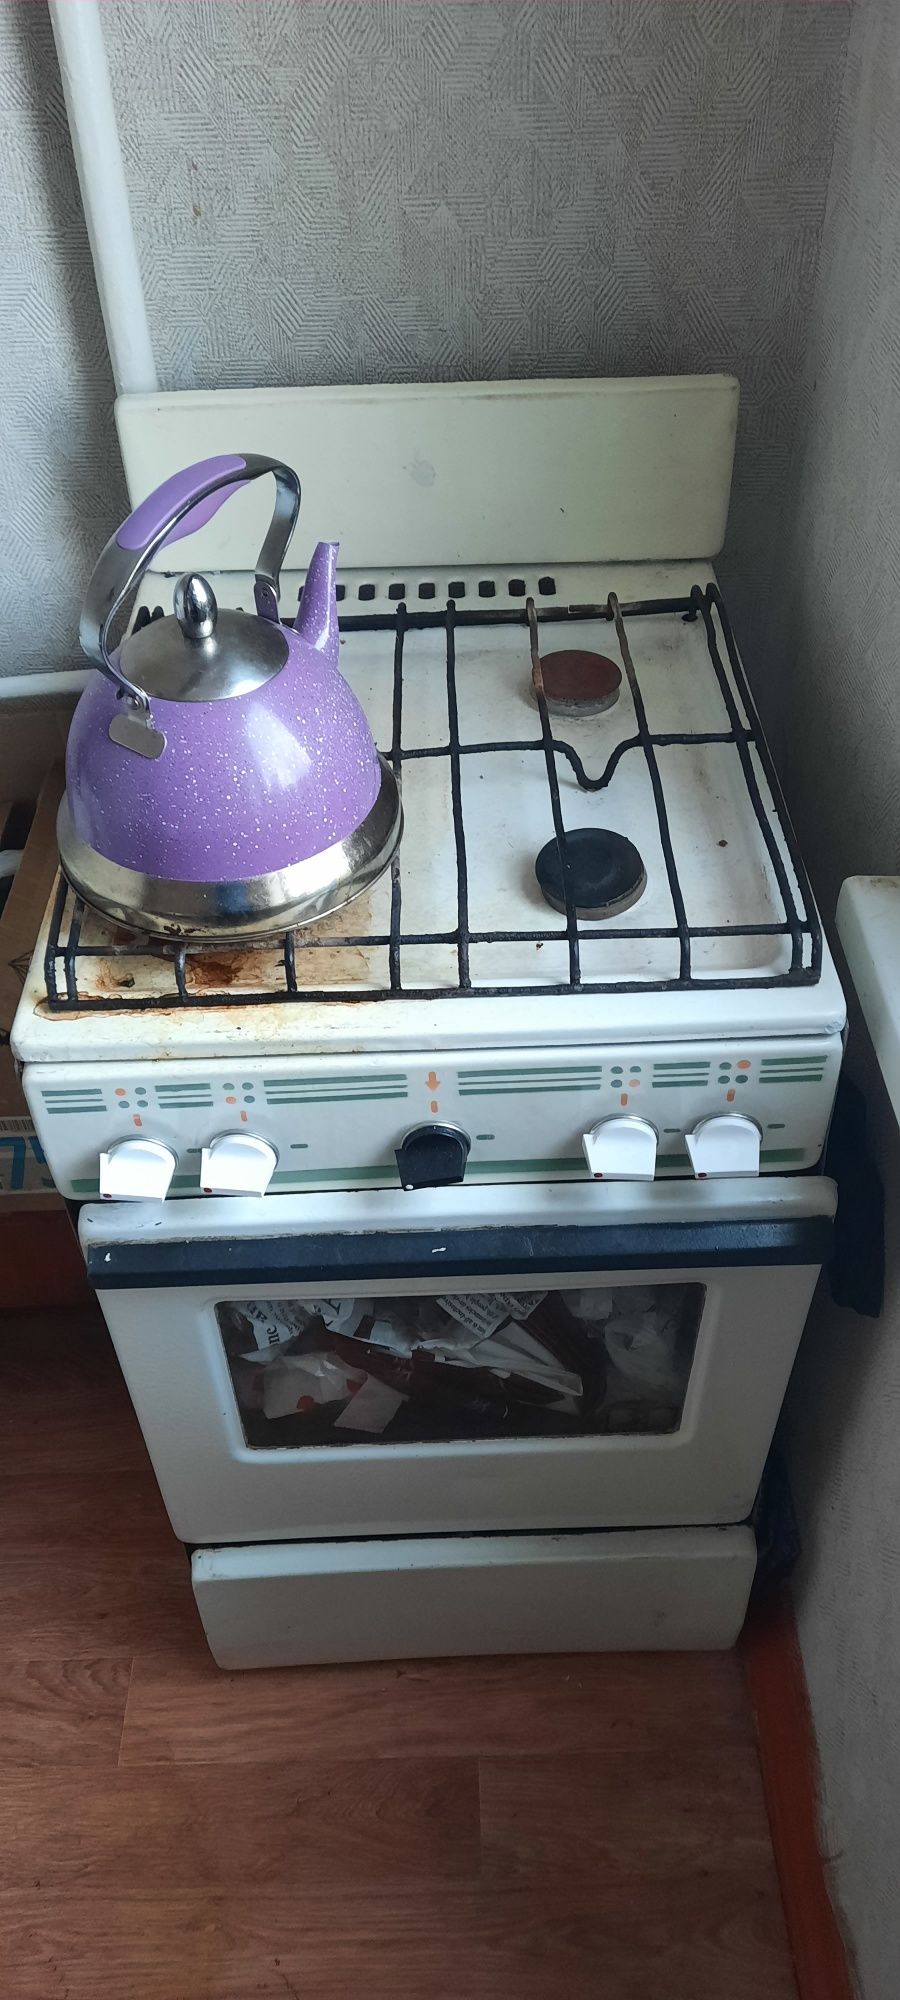 Газ плита в рабочем состоянии духовка  работает